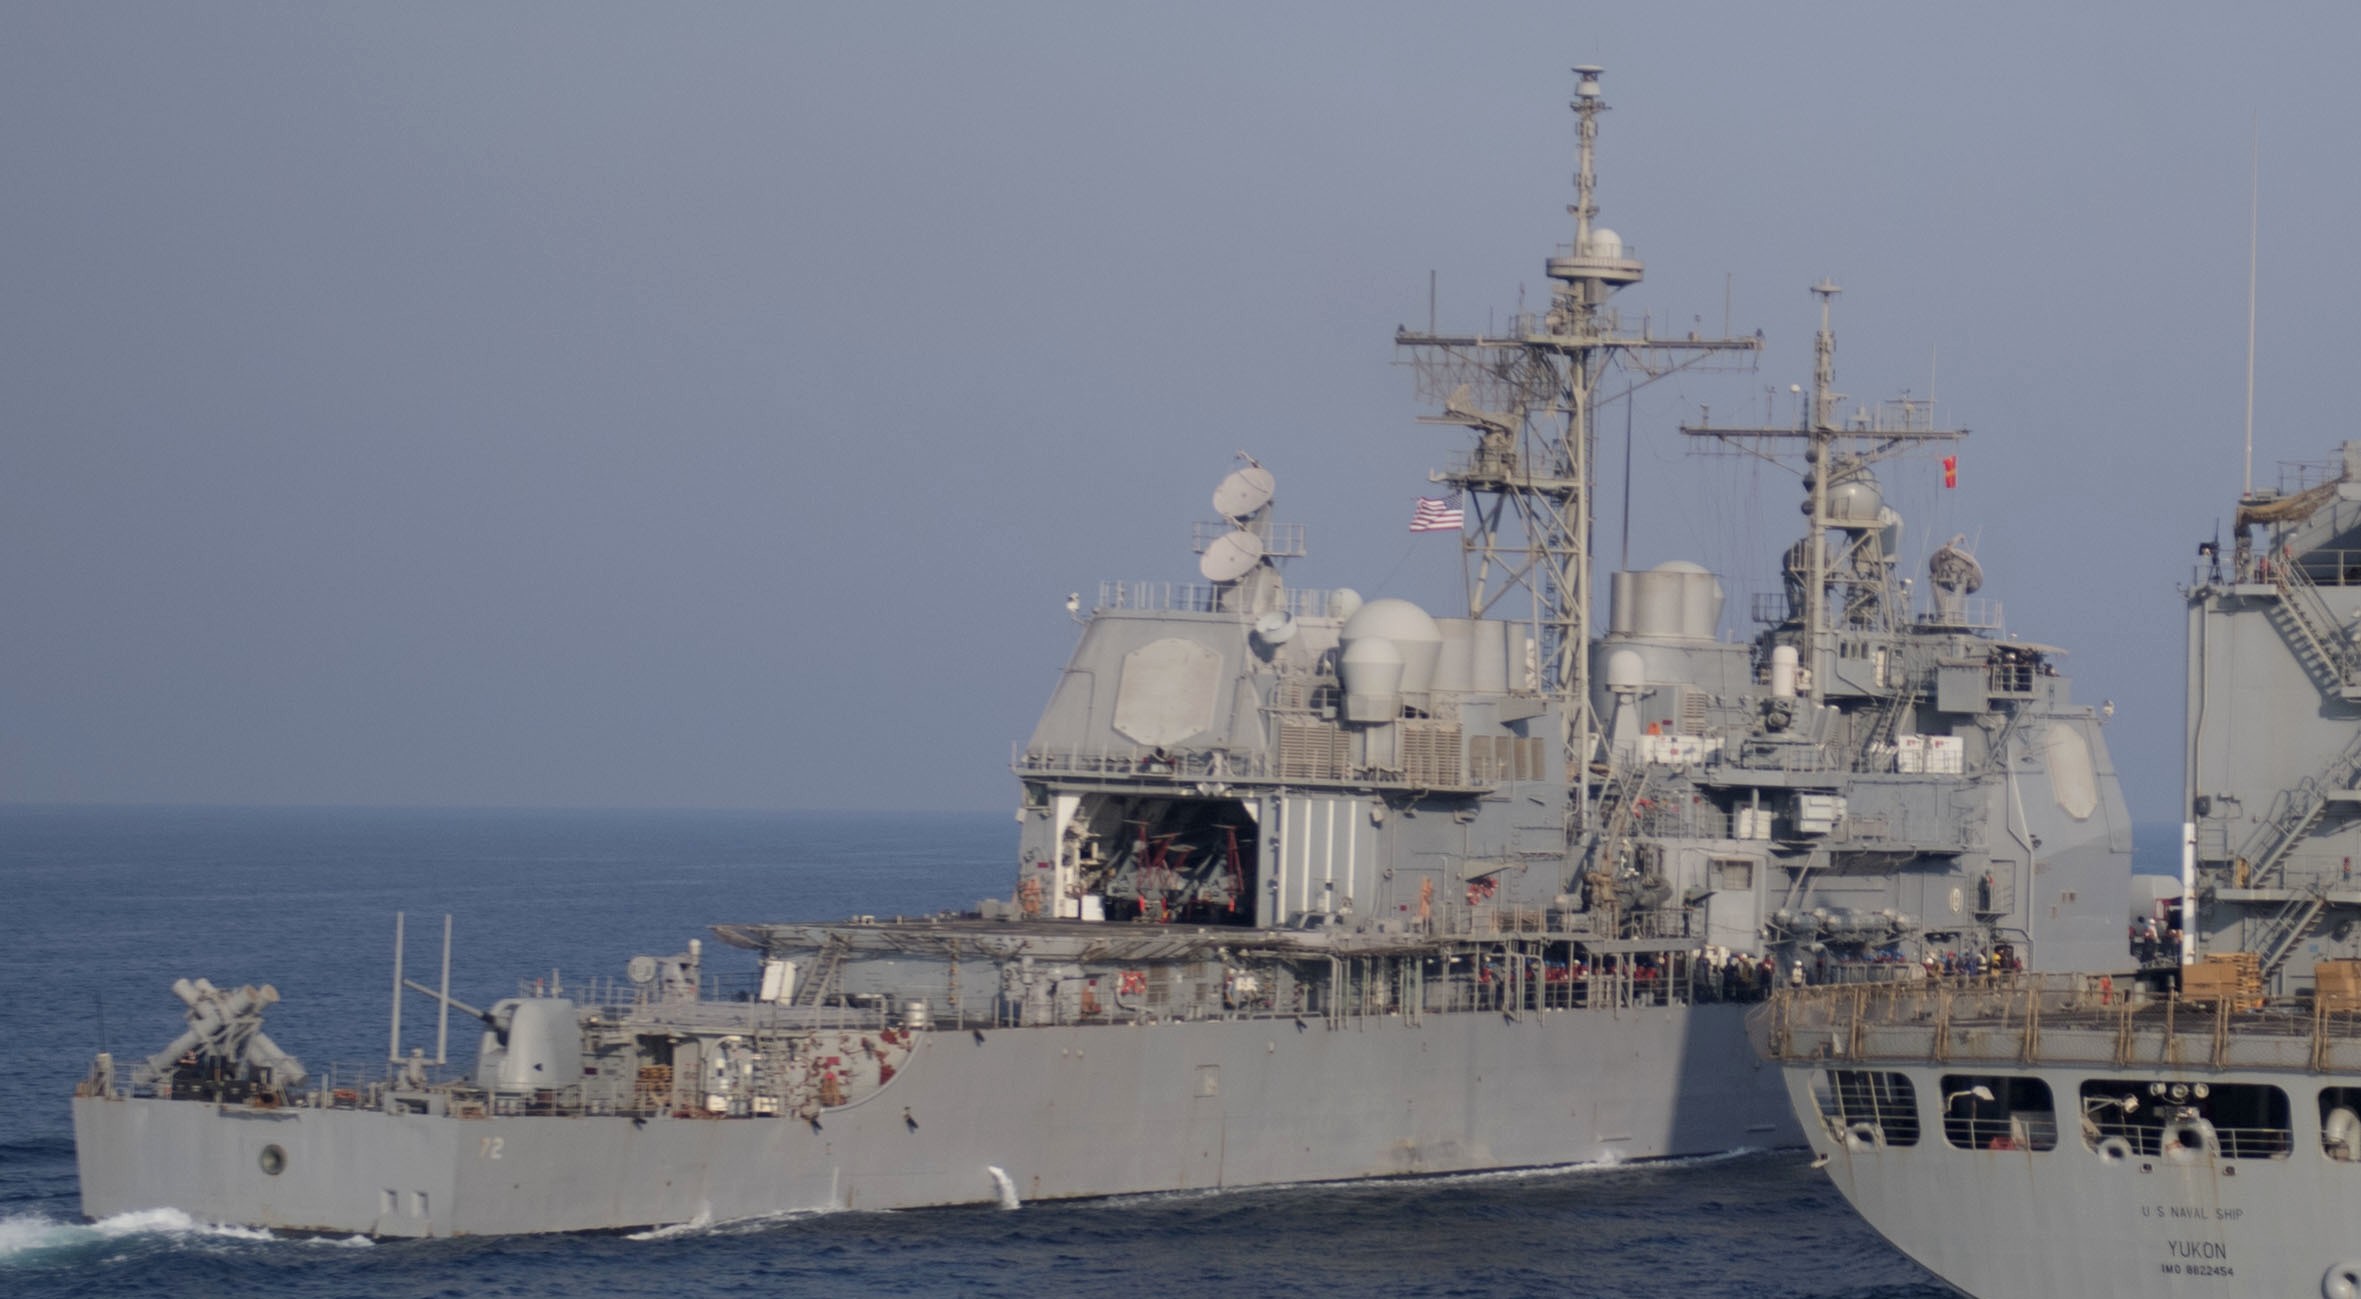 cg-55 uss leyte gulf ticonderoga class guided missile cruiser aegis us navy arabian gulf 53